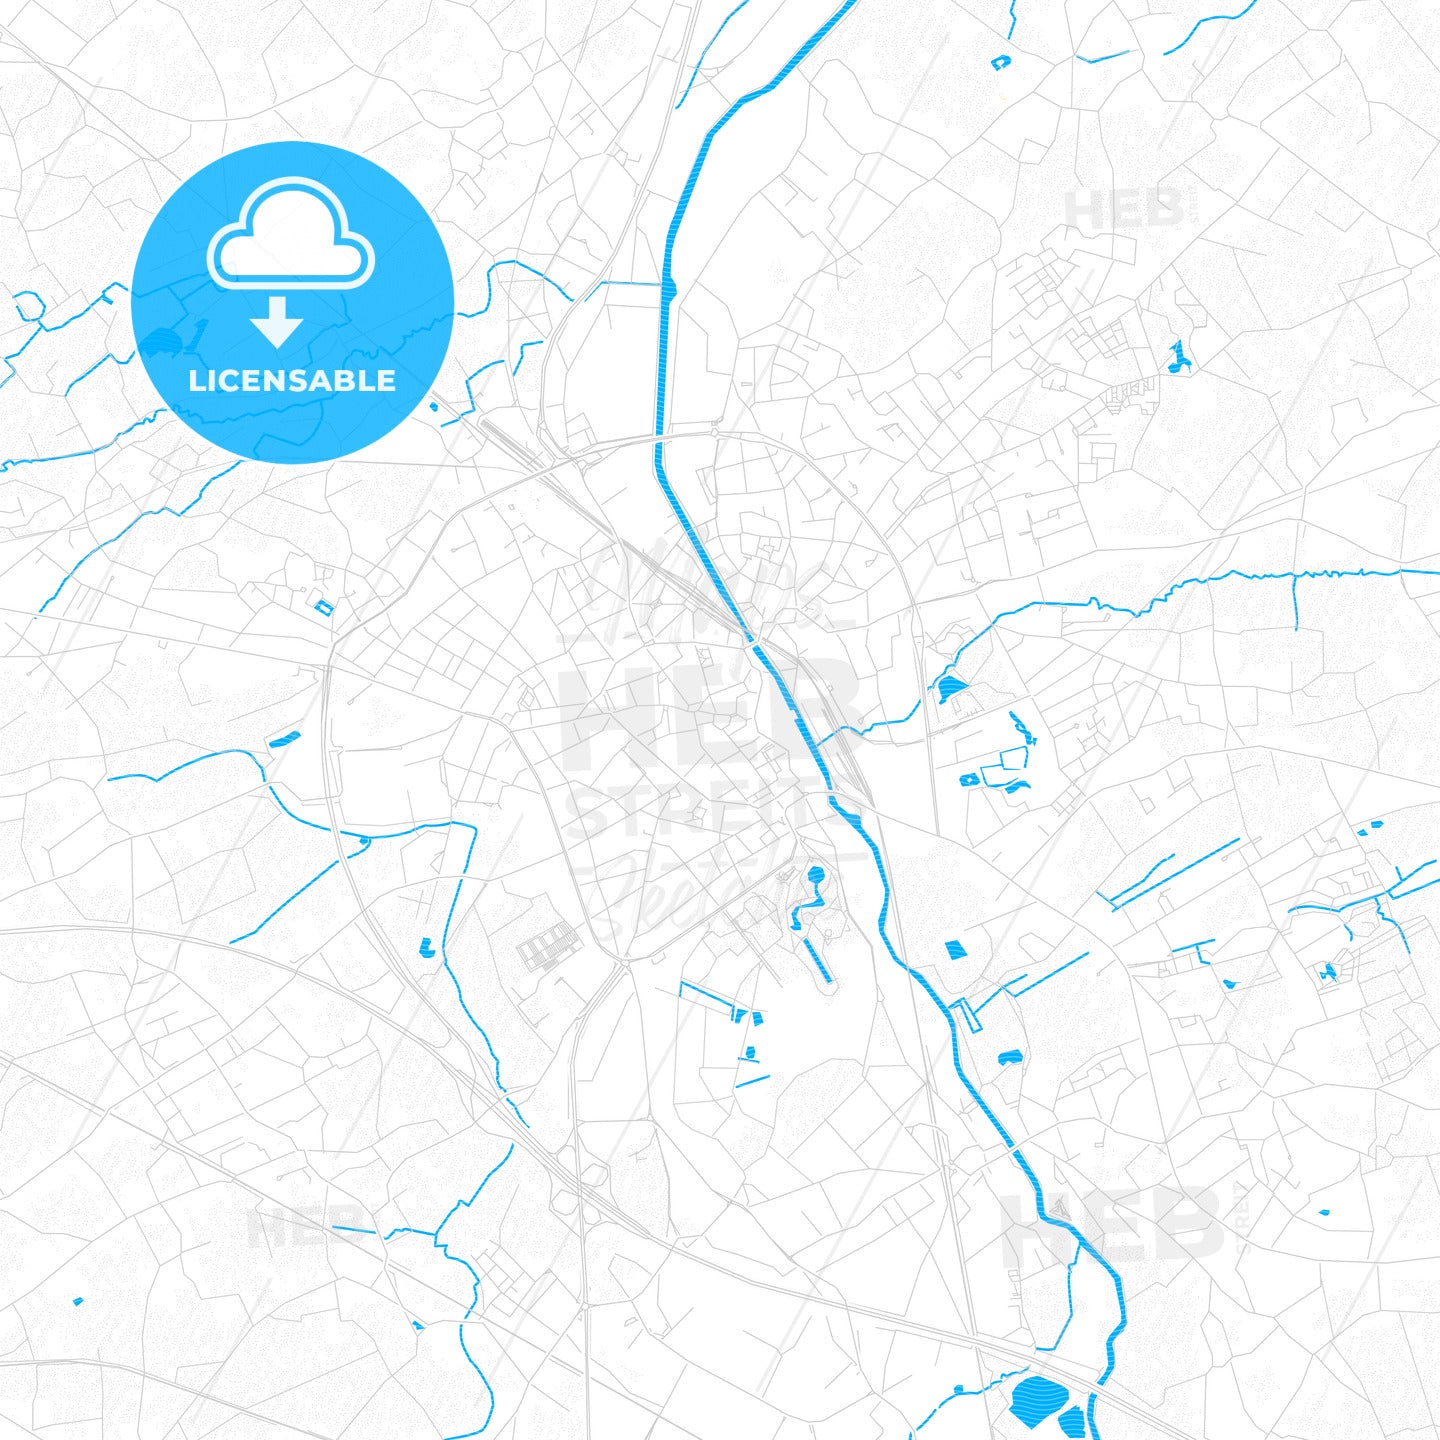 Aalst, Belgium PDF vector map with water in focus